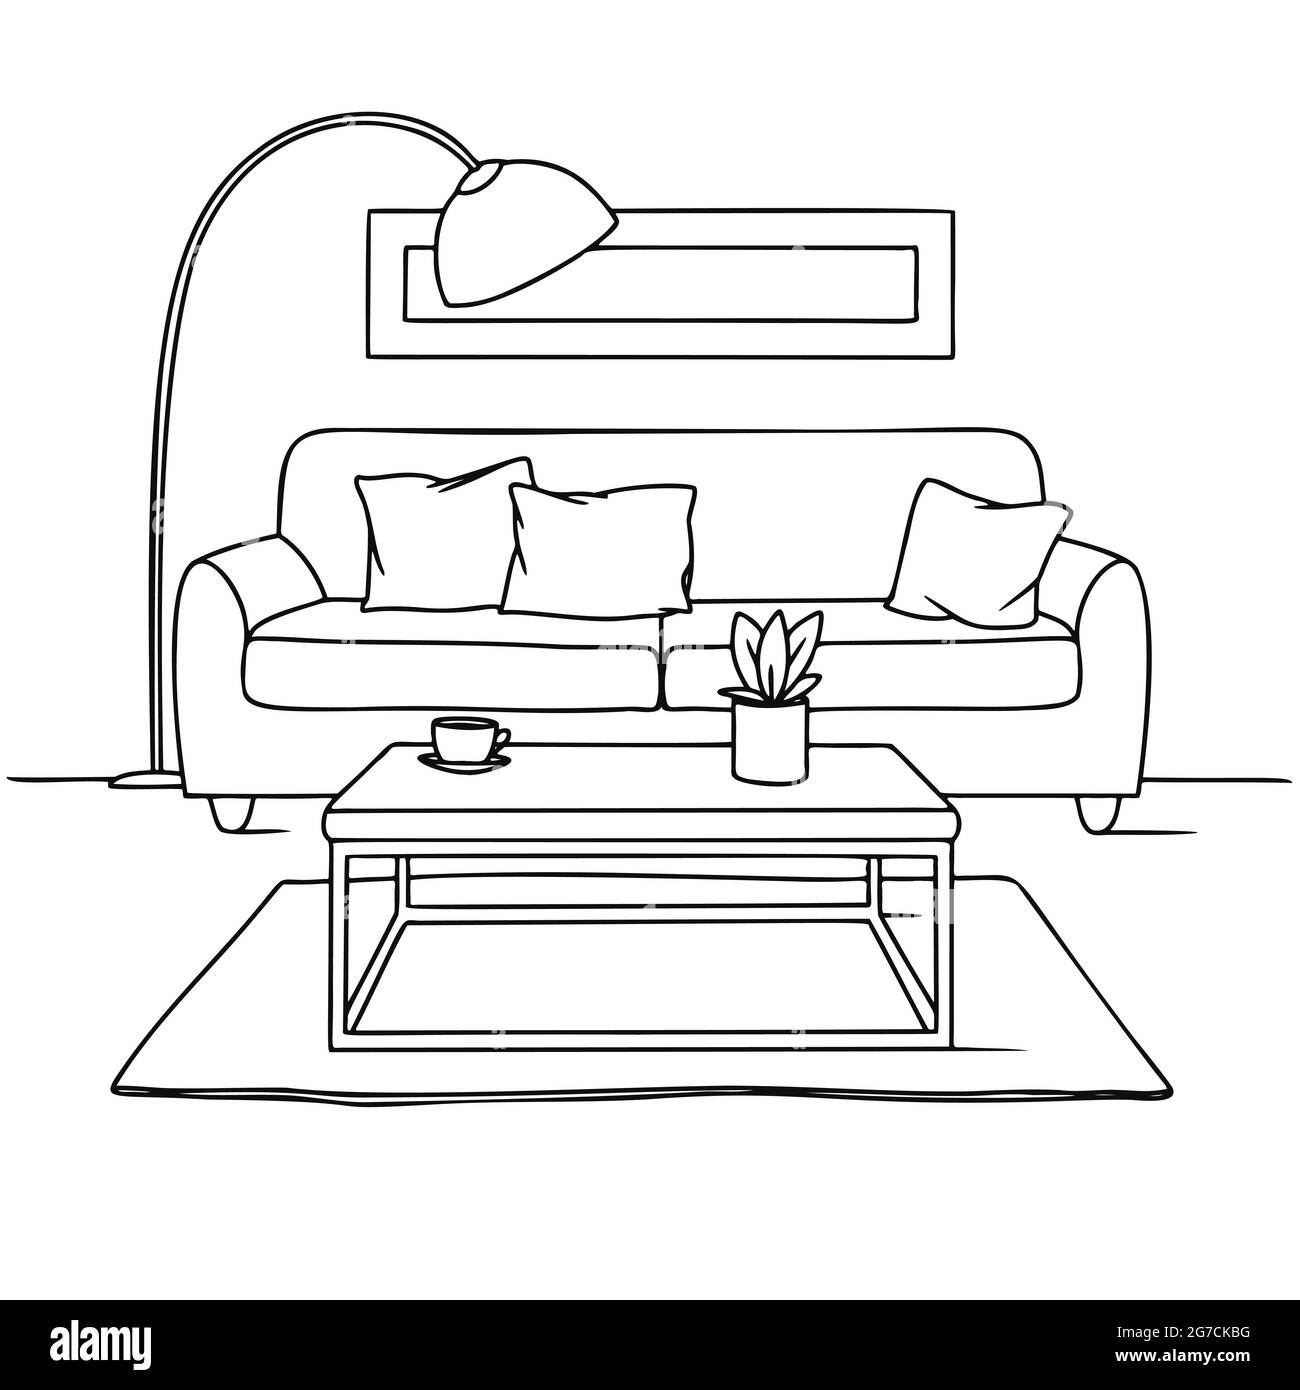 Dessin de la salle de séjour en noir sur blanc. Croquis de l'intérieur,  canapé, lampe et autres meubles. Illustration vectorielle Image Vectorielle  Stock - Alamy